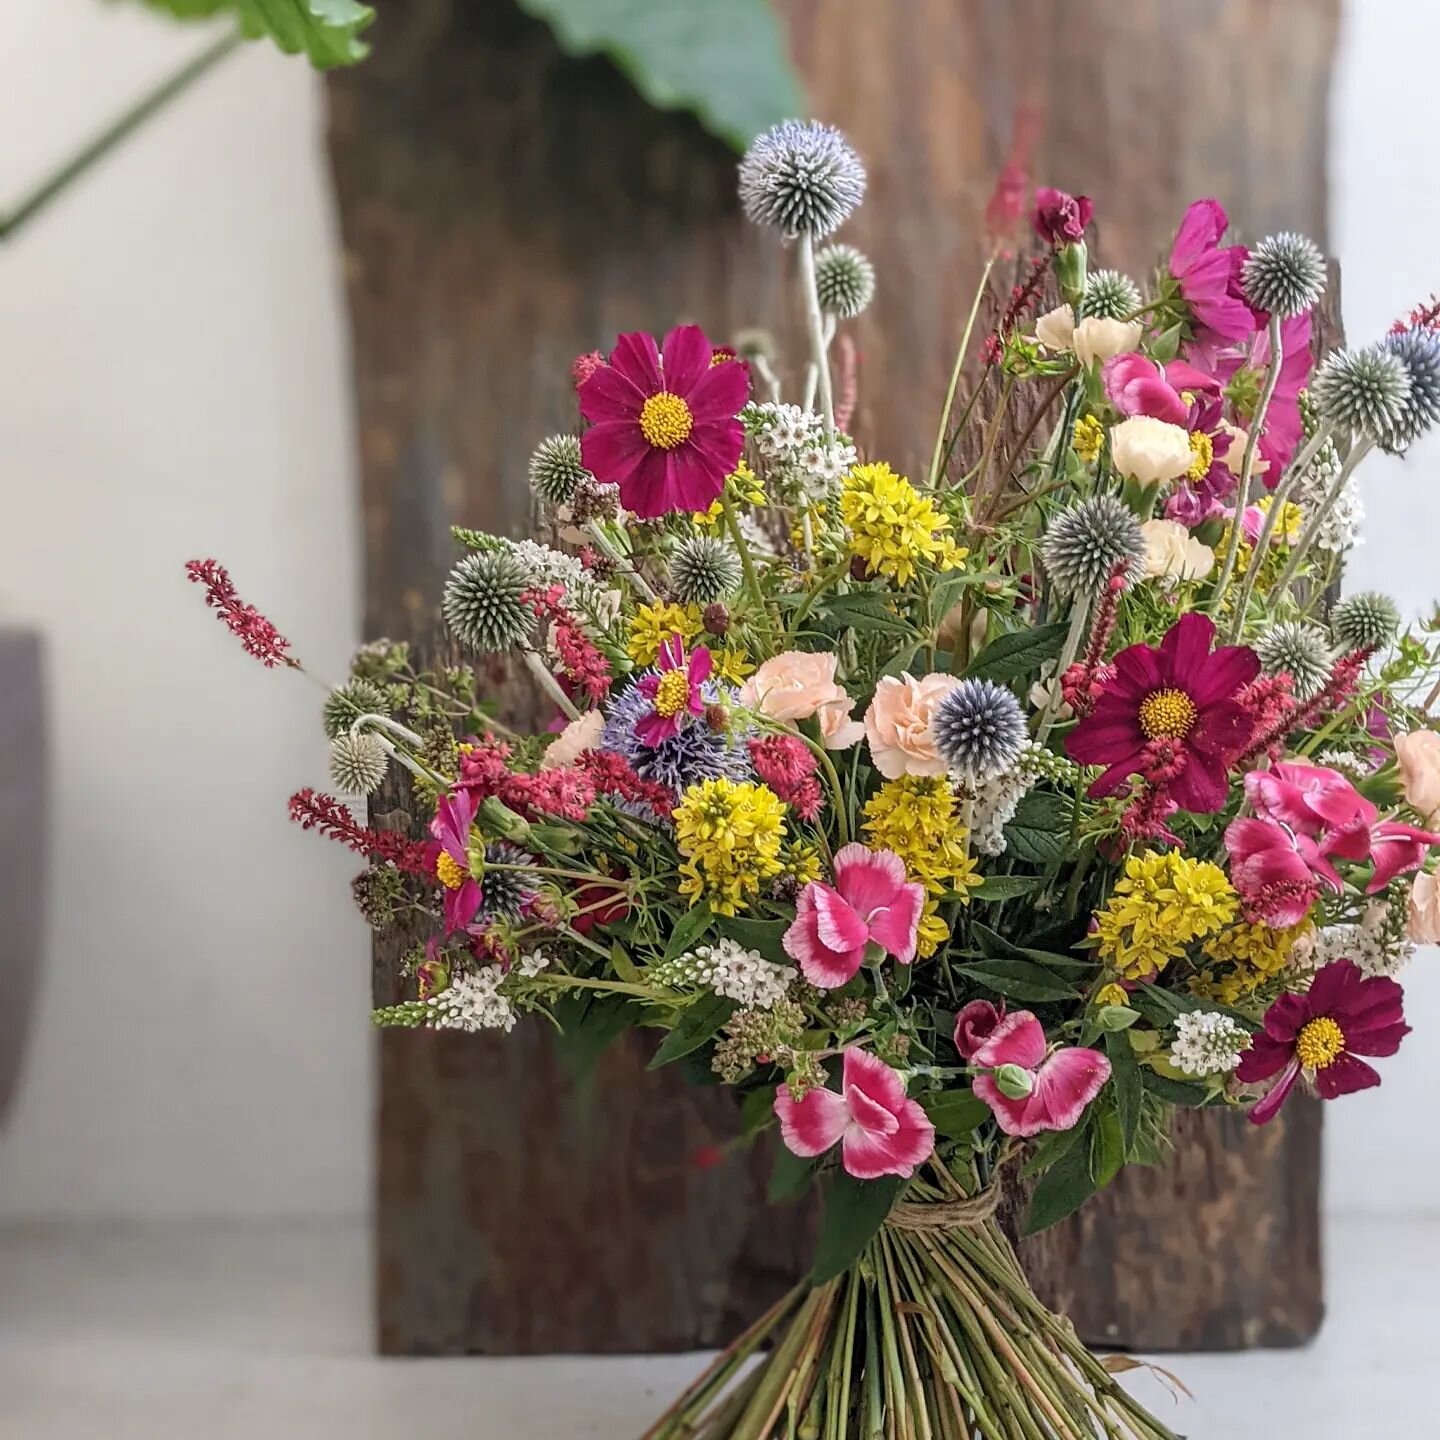 Wir sind aus der Sommerpause zur&uuml;ck! Morgen Samstag haben wir wieder ab 10 Uhr f&uuml;r euch ge&ouml;ffnet!

Wir freuen uns auf euren Besuch! 🤗

#ateliergr&uuml;nraum #steinenstrasse #floristik #blumenstrau&szlig; #blumen #blumenladen #flowers 